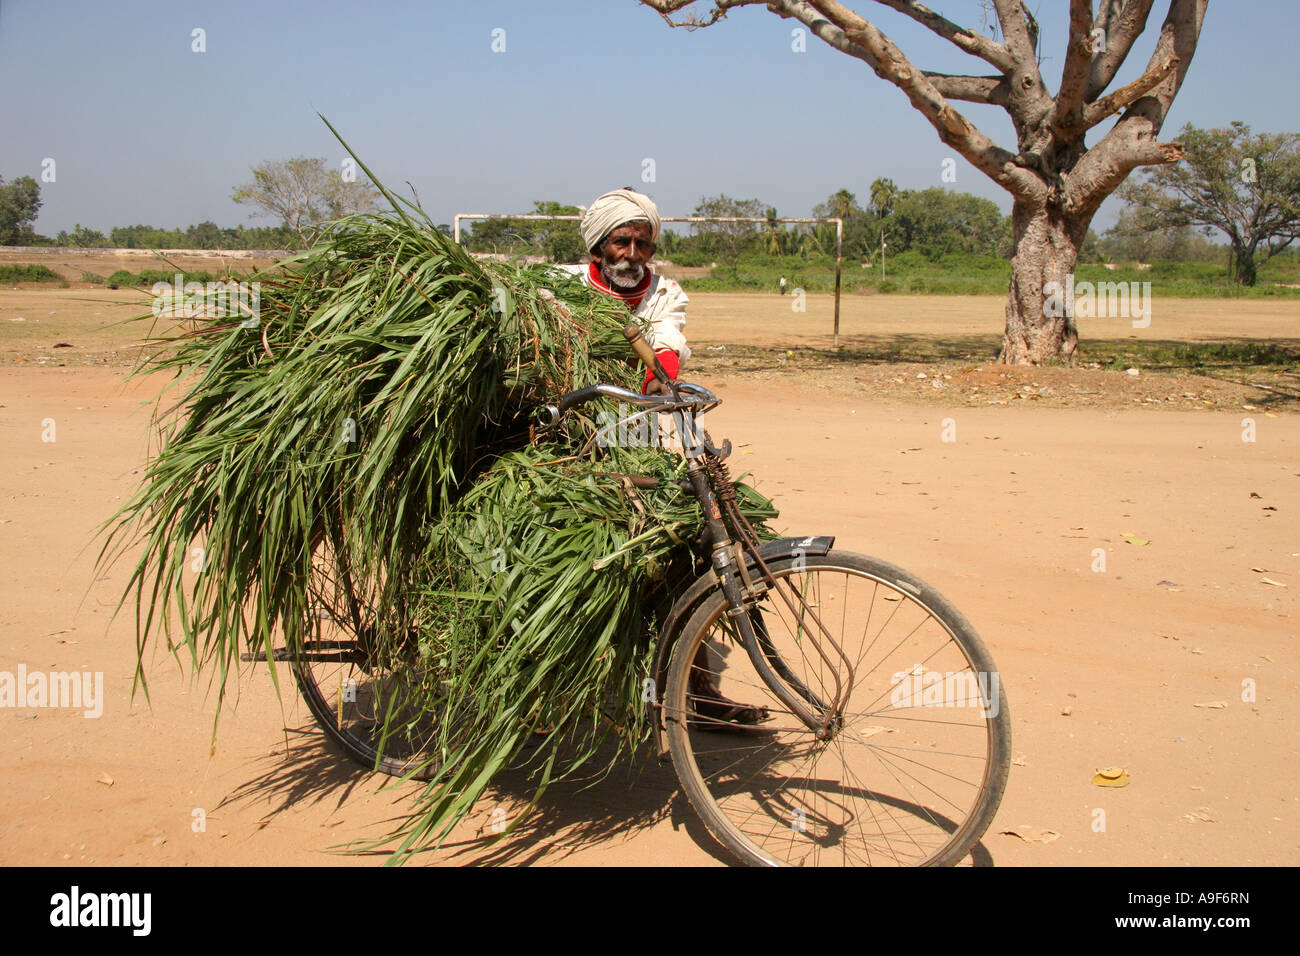 Alter Mann transportiert Getreide auf seinem Fahrrad an Sri Ranganathaswamy  Tempel in Srirangam, in der Nähe von Mysore, Karnataka, Indien  Stockfotografie - Alamy